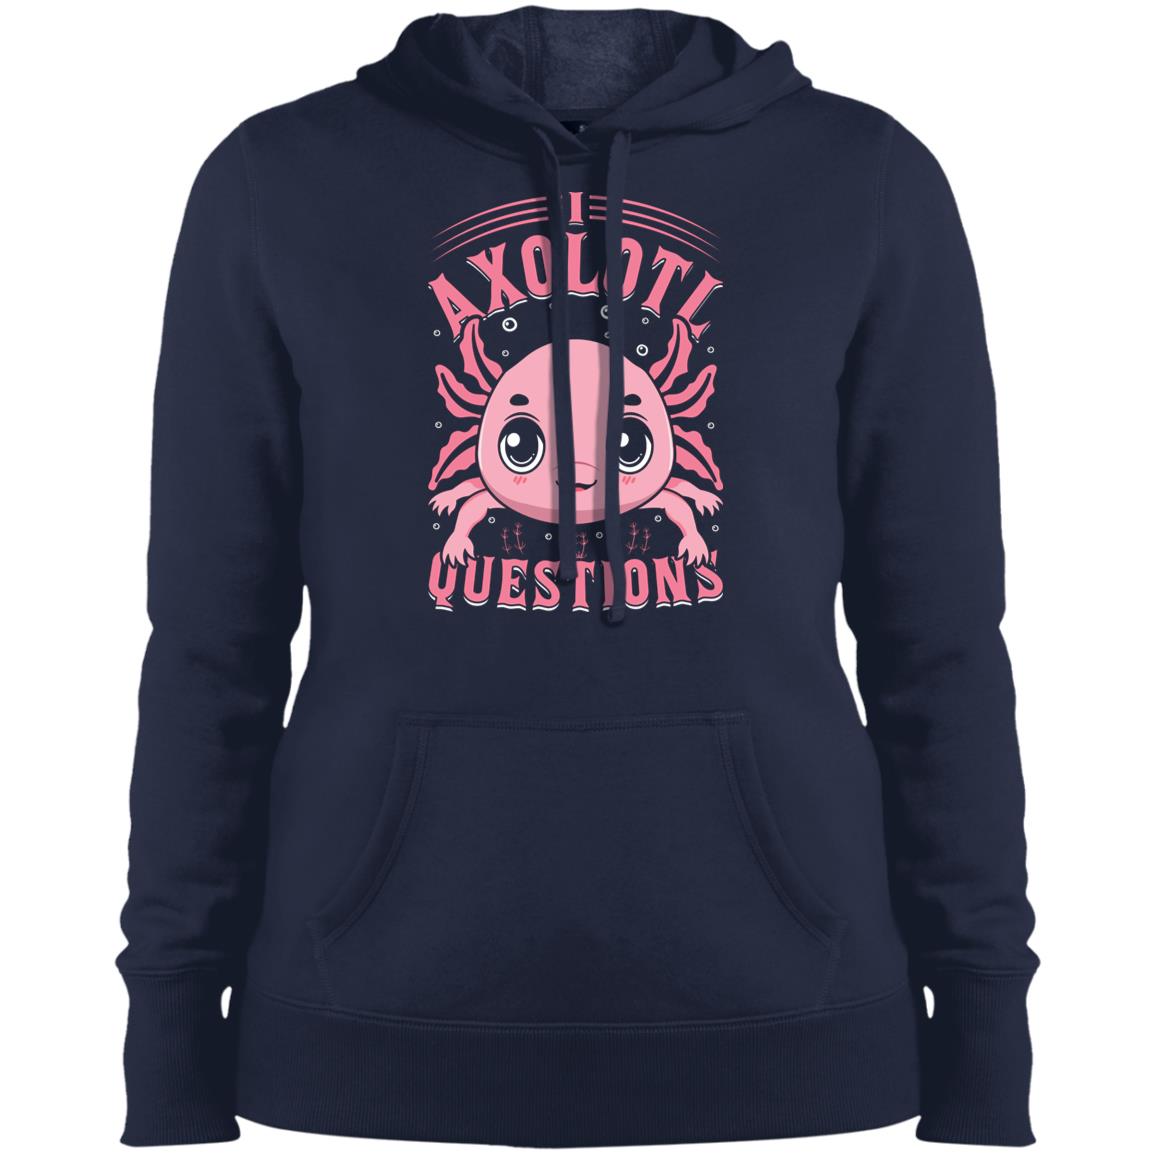 I Axolotl Questions - Hoodie